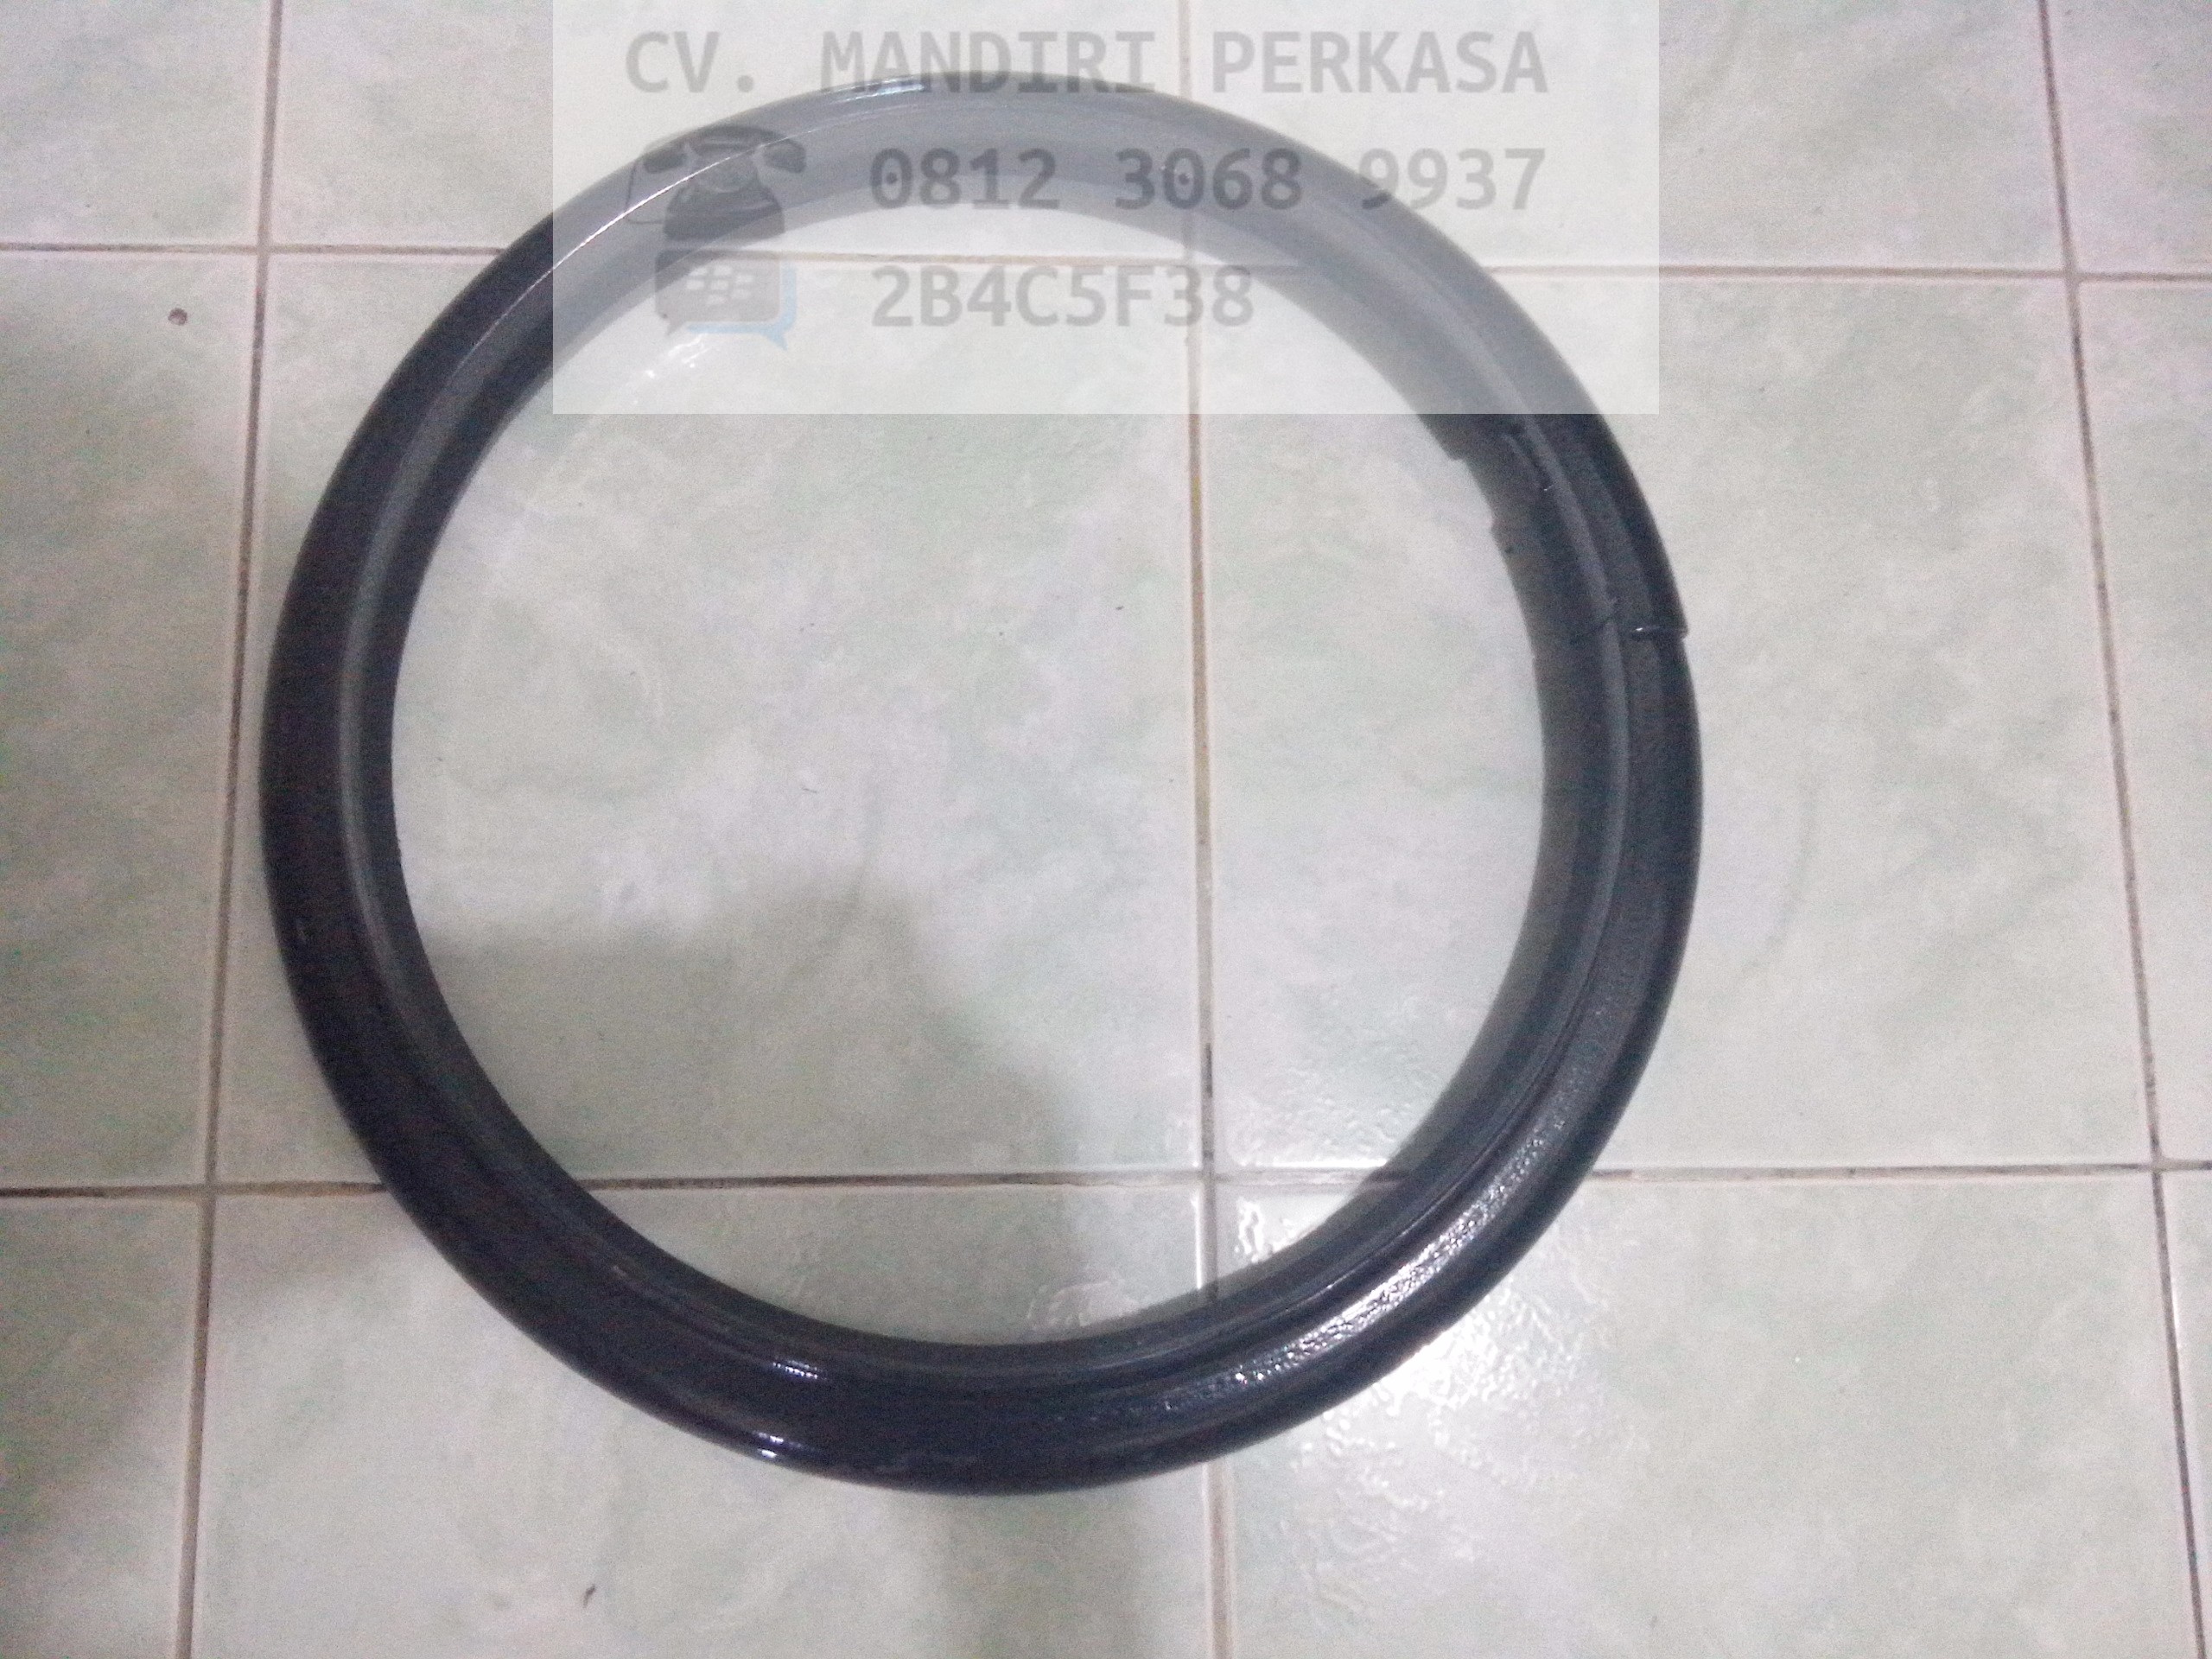 rim assy 28×9-15; 825-15 & 700-12 model ring